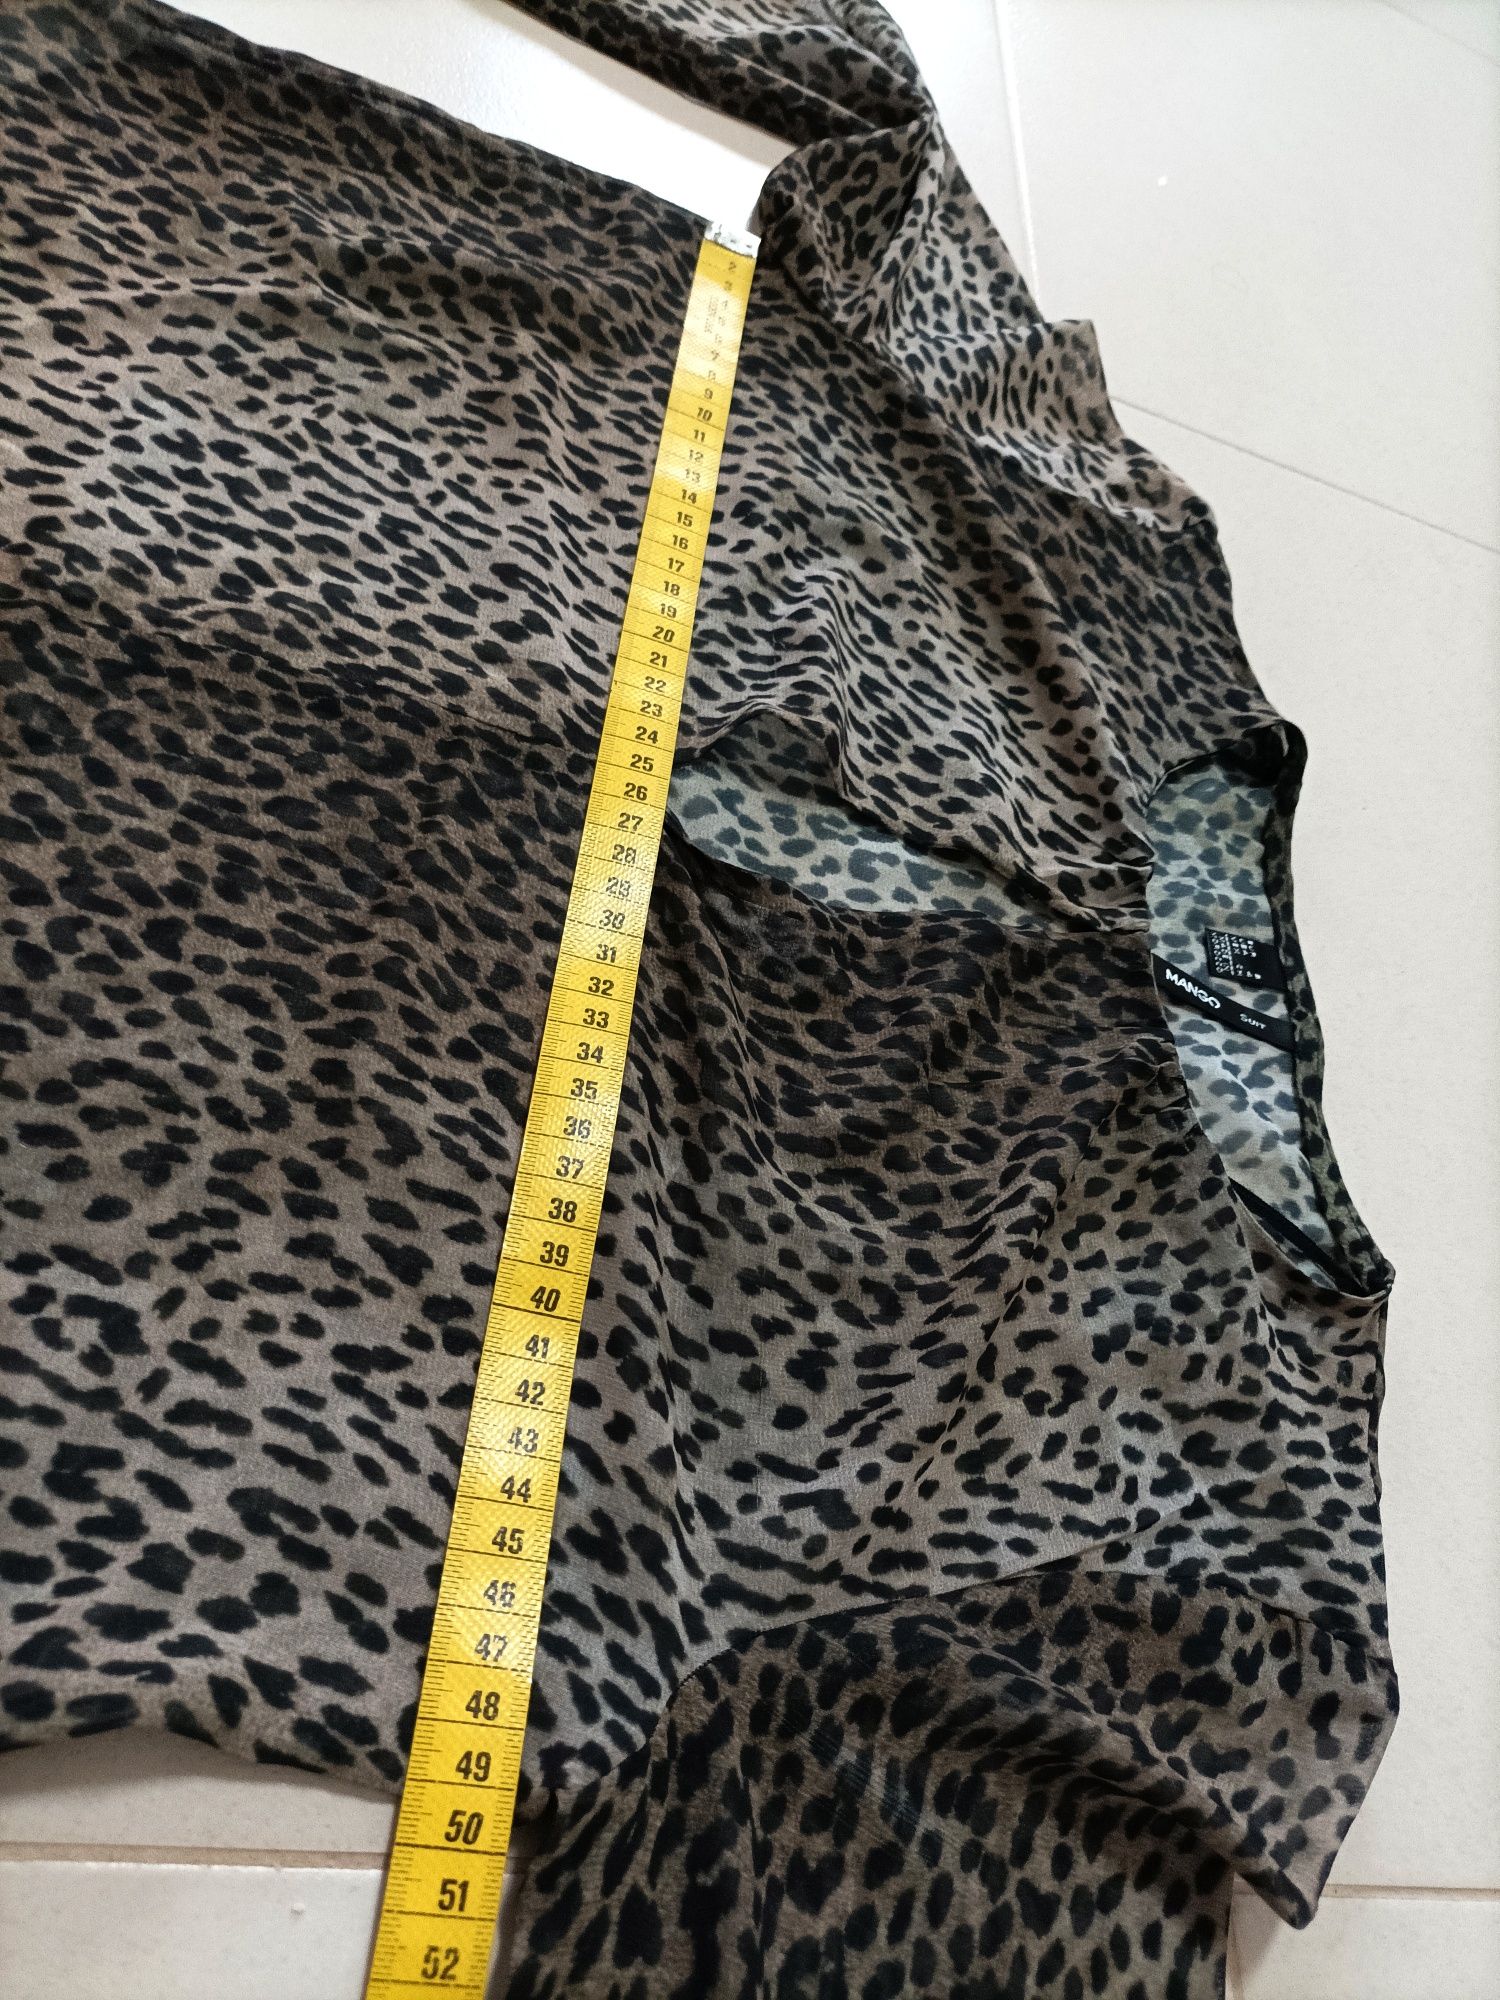 Blusa com padrão Leopardo - Mango (Tam. S)